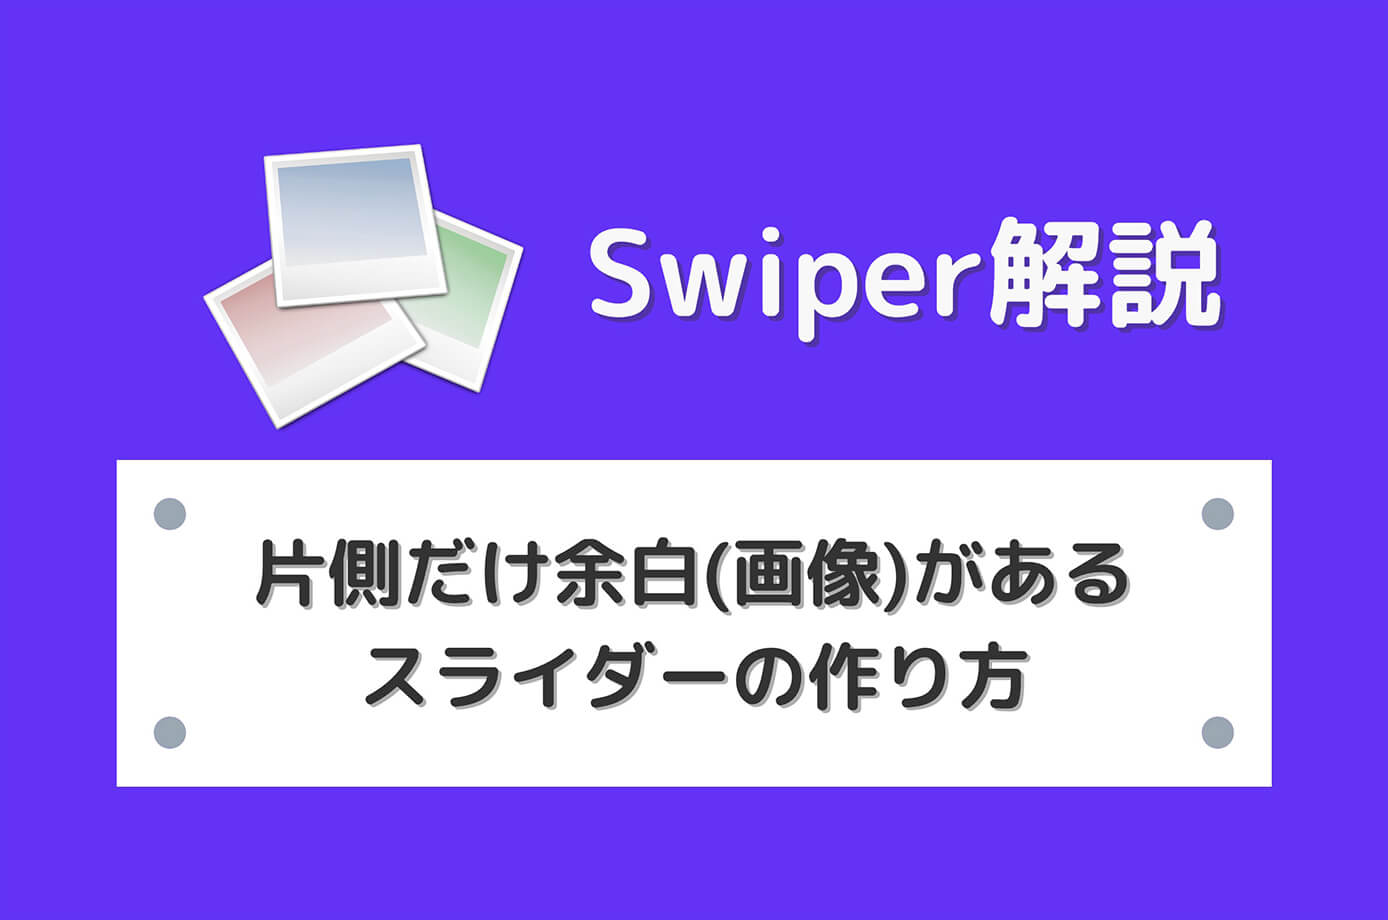 【Swiper】片側だけ余白(画像)があるスライダーの作り方